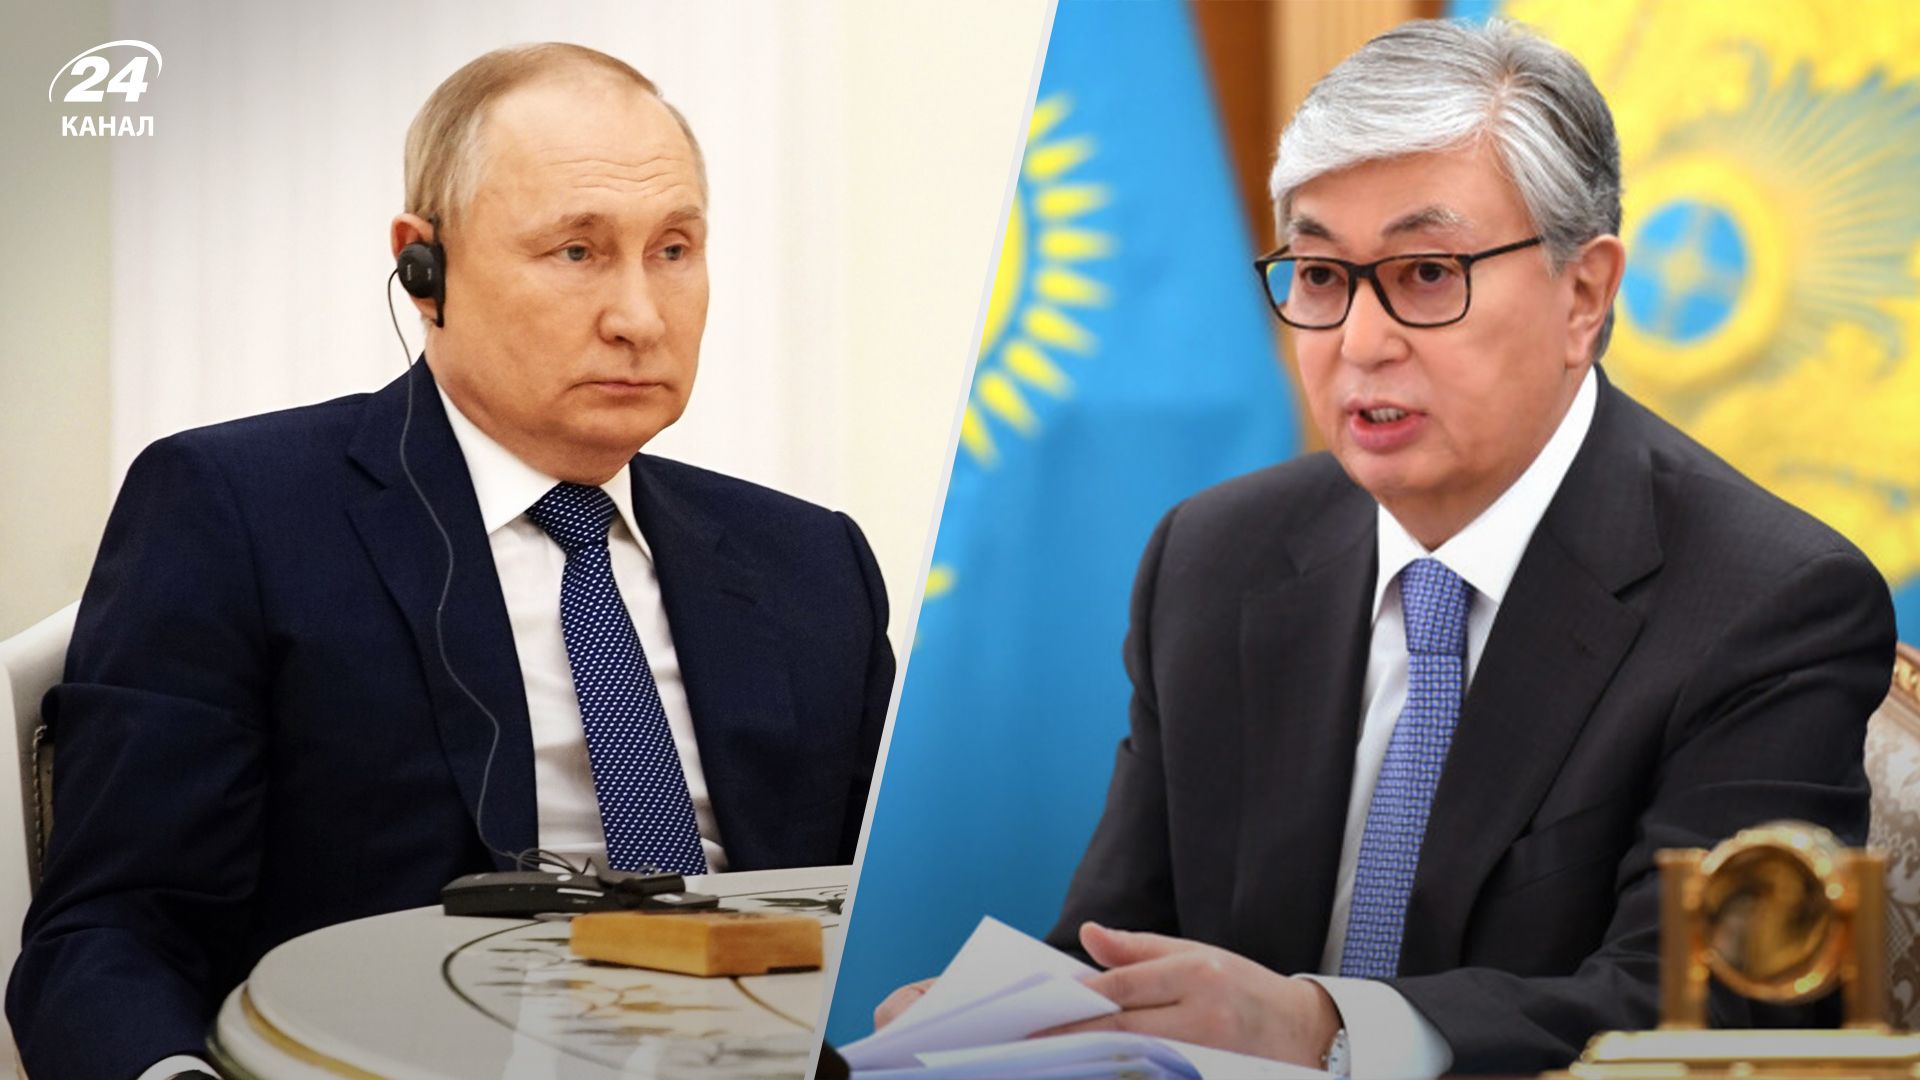 Казахстан та Росія - Володимир Путін втратив вплив на Центральну Азію - 24 Канал